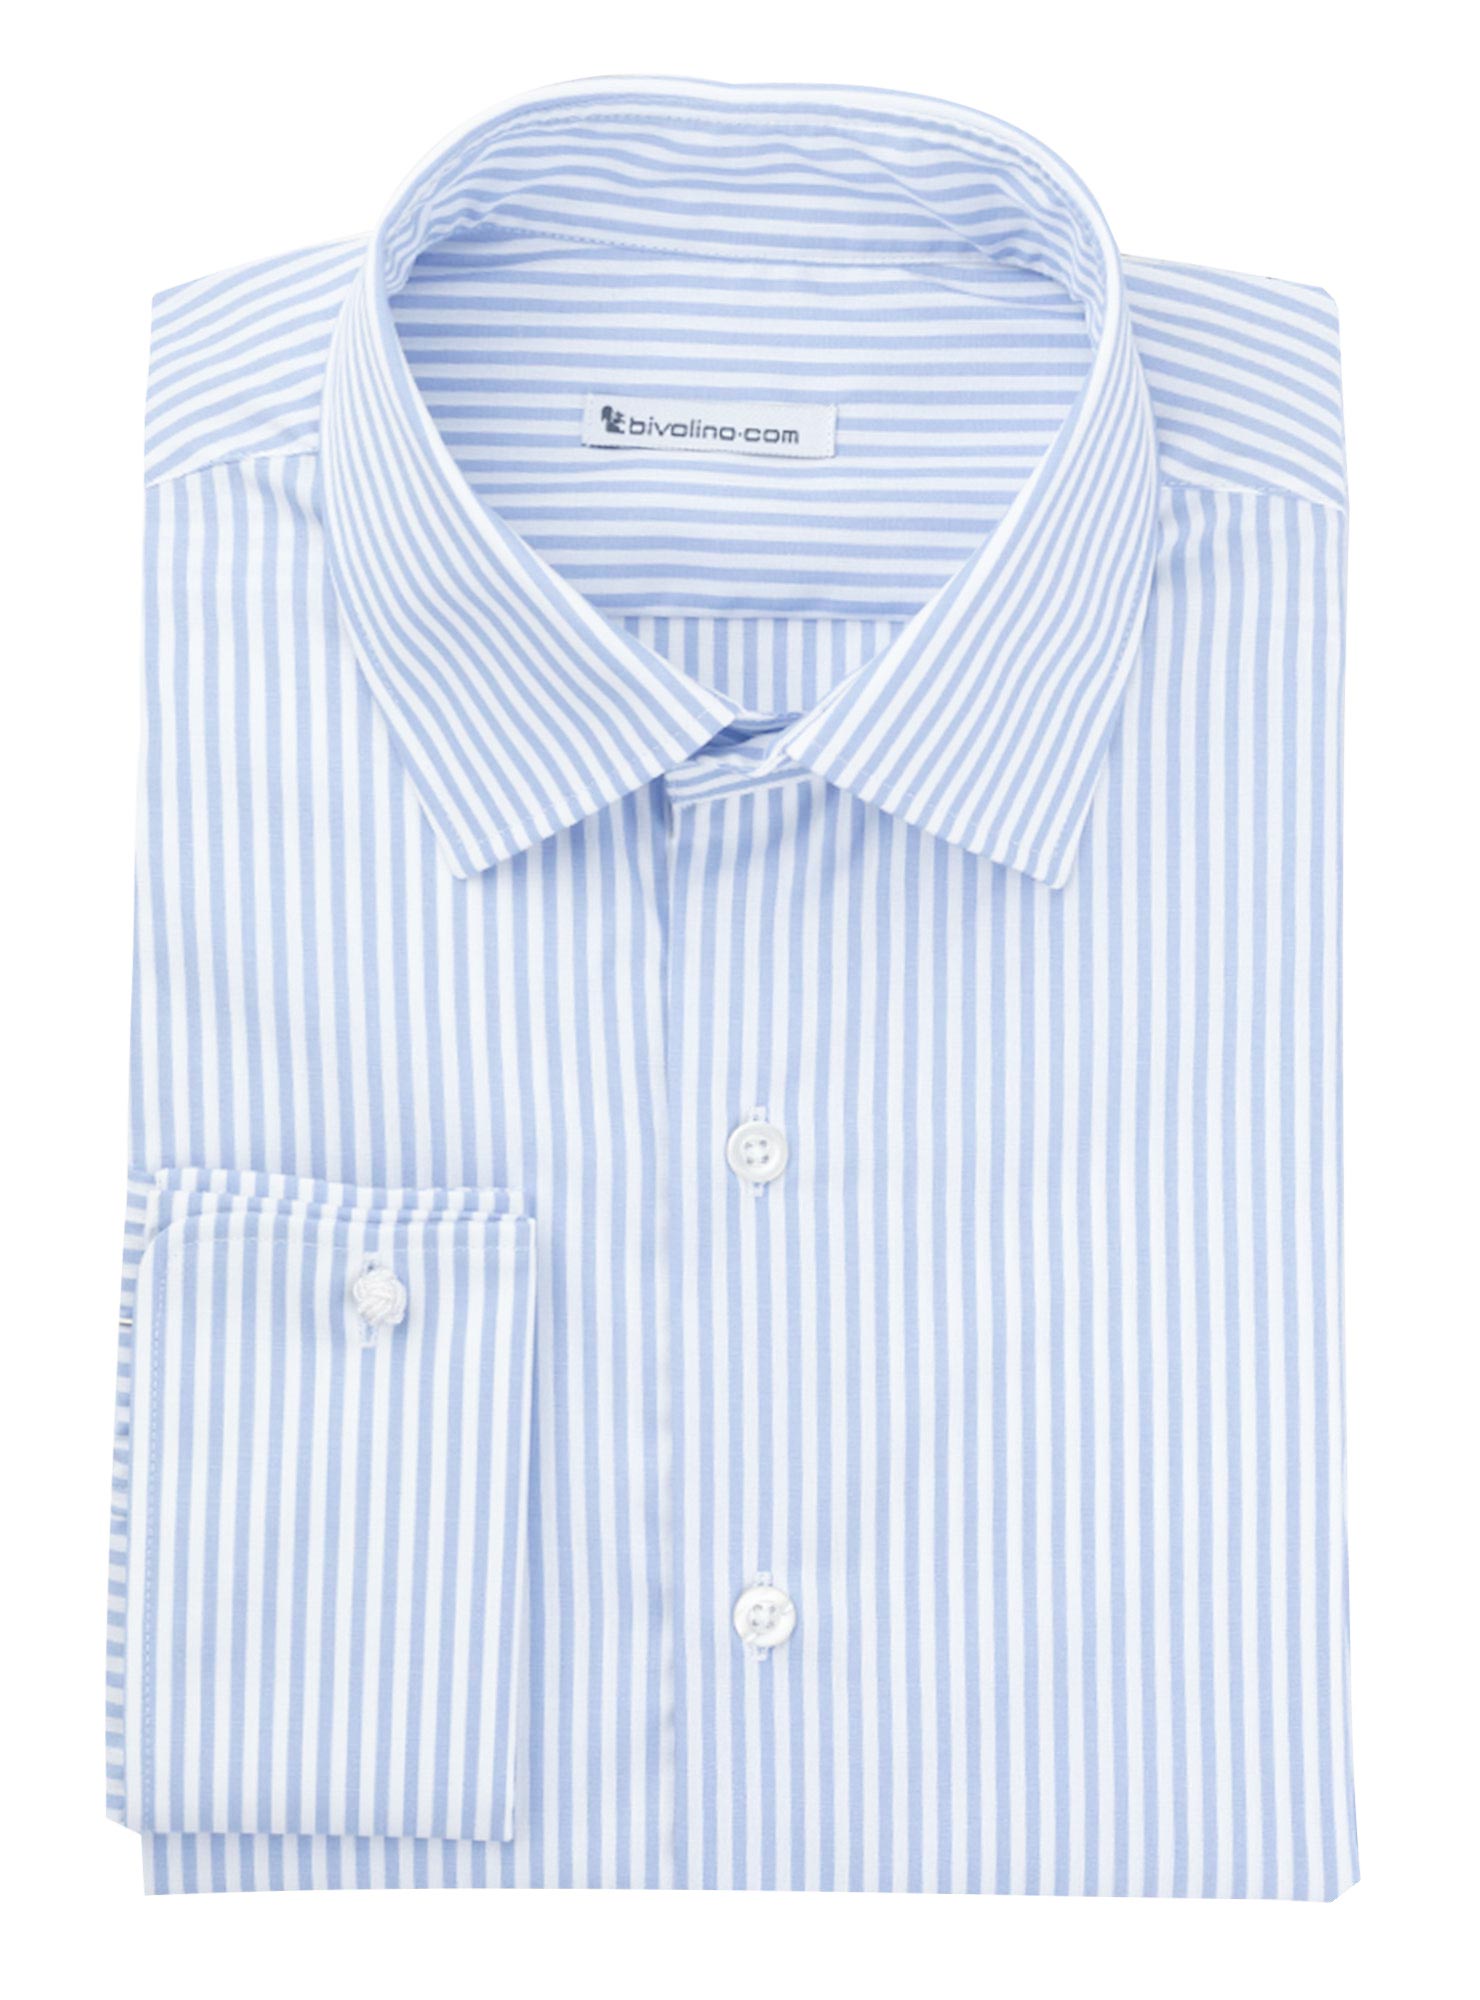 MASSAS - chemise homme sur mesure Popeline Rayé Bengale Bleu  - DOCRA 2 - BENGAL